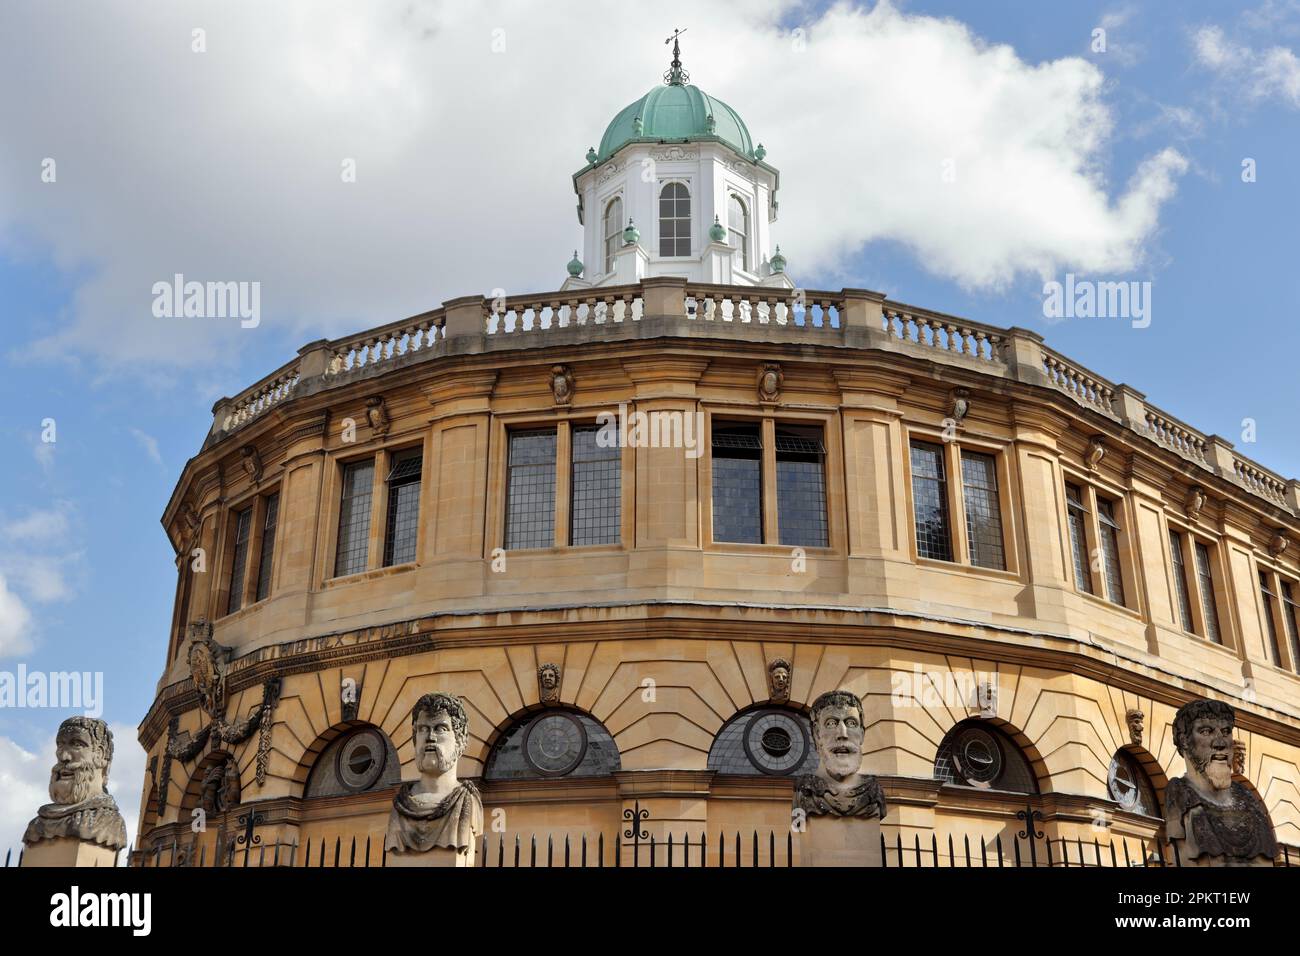 Sheldonian Theatre, utilisé pour des récitals musicaux, des conférences, des conférences et diverses cérémonies tenues par l'Université d'Oxford Banque D'Images